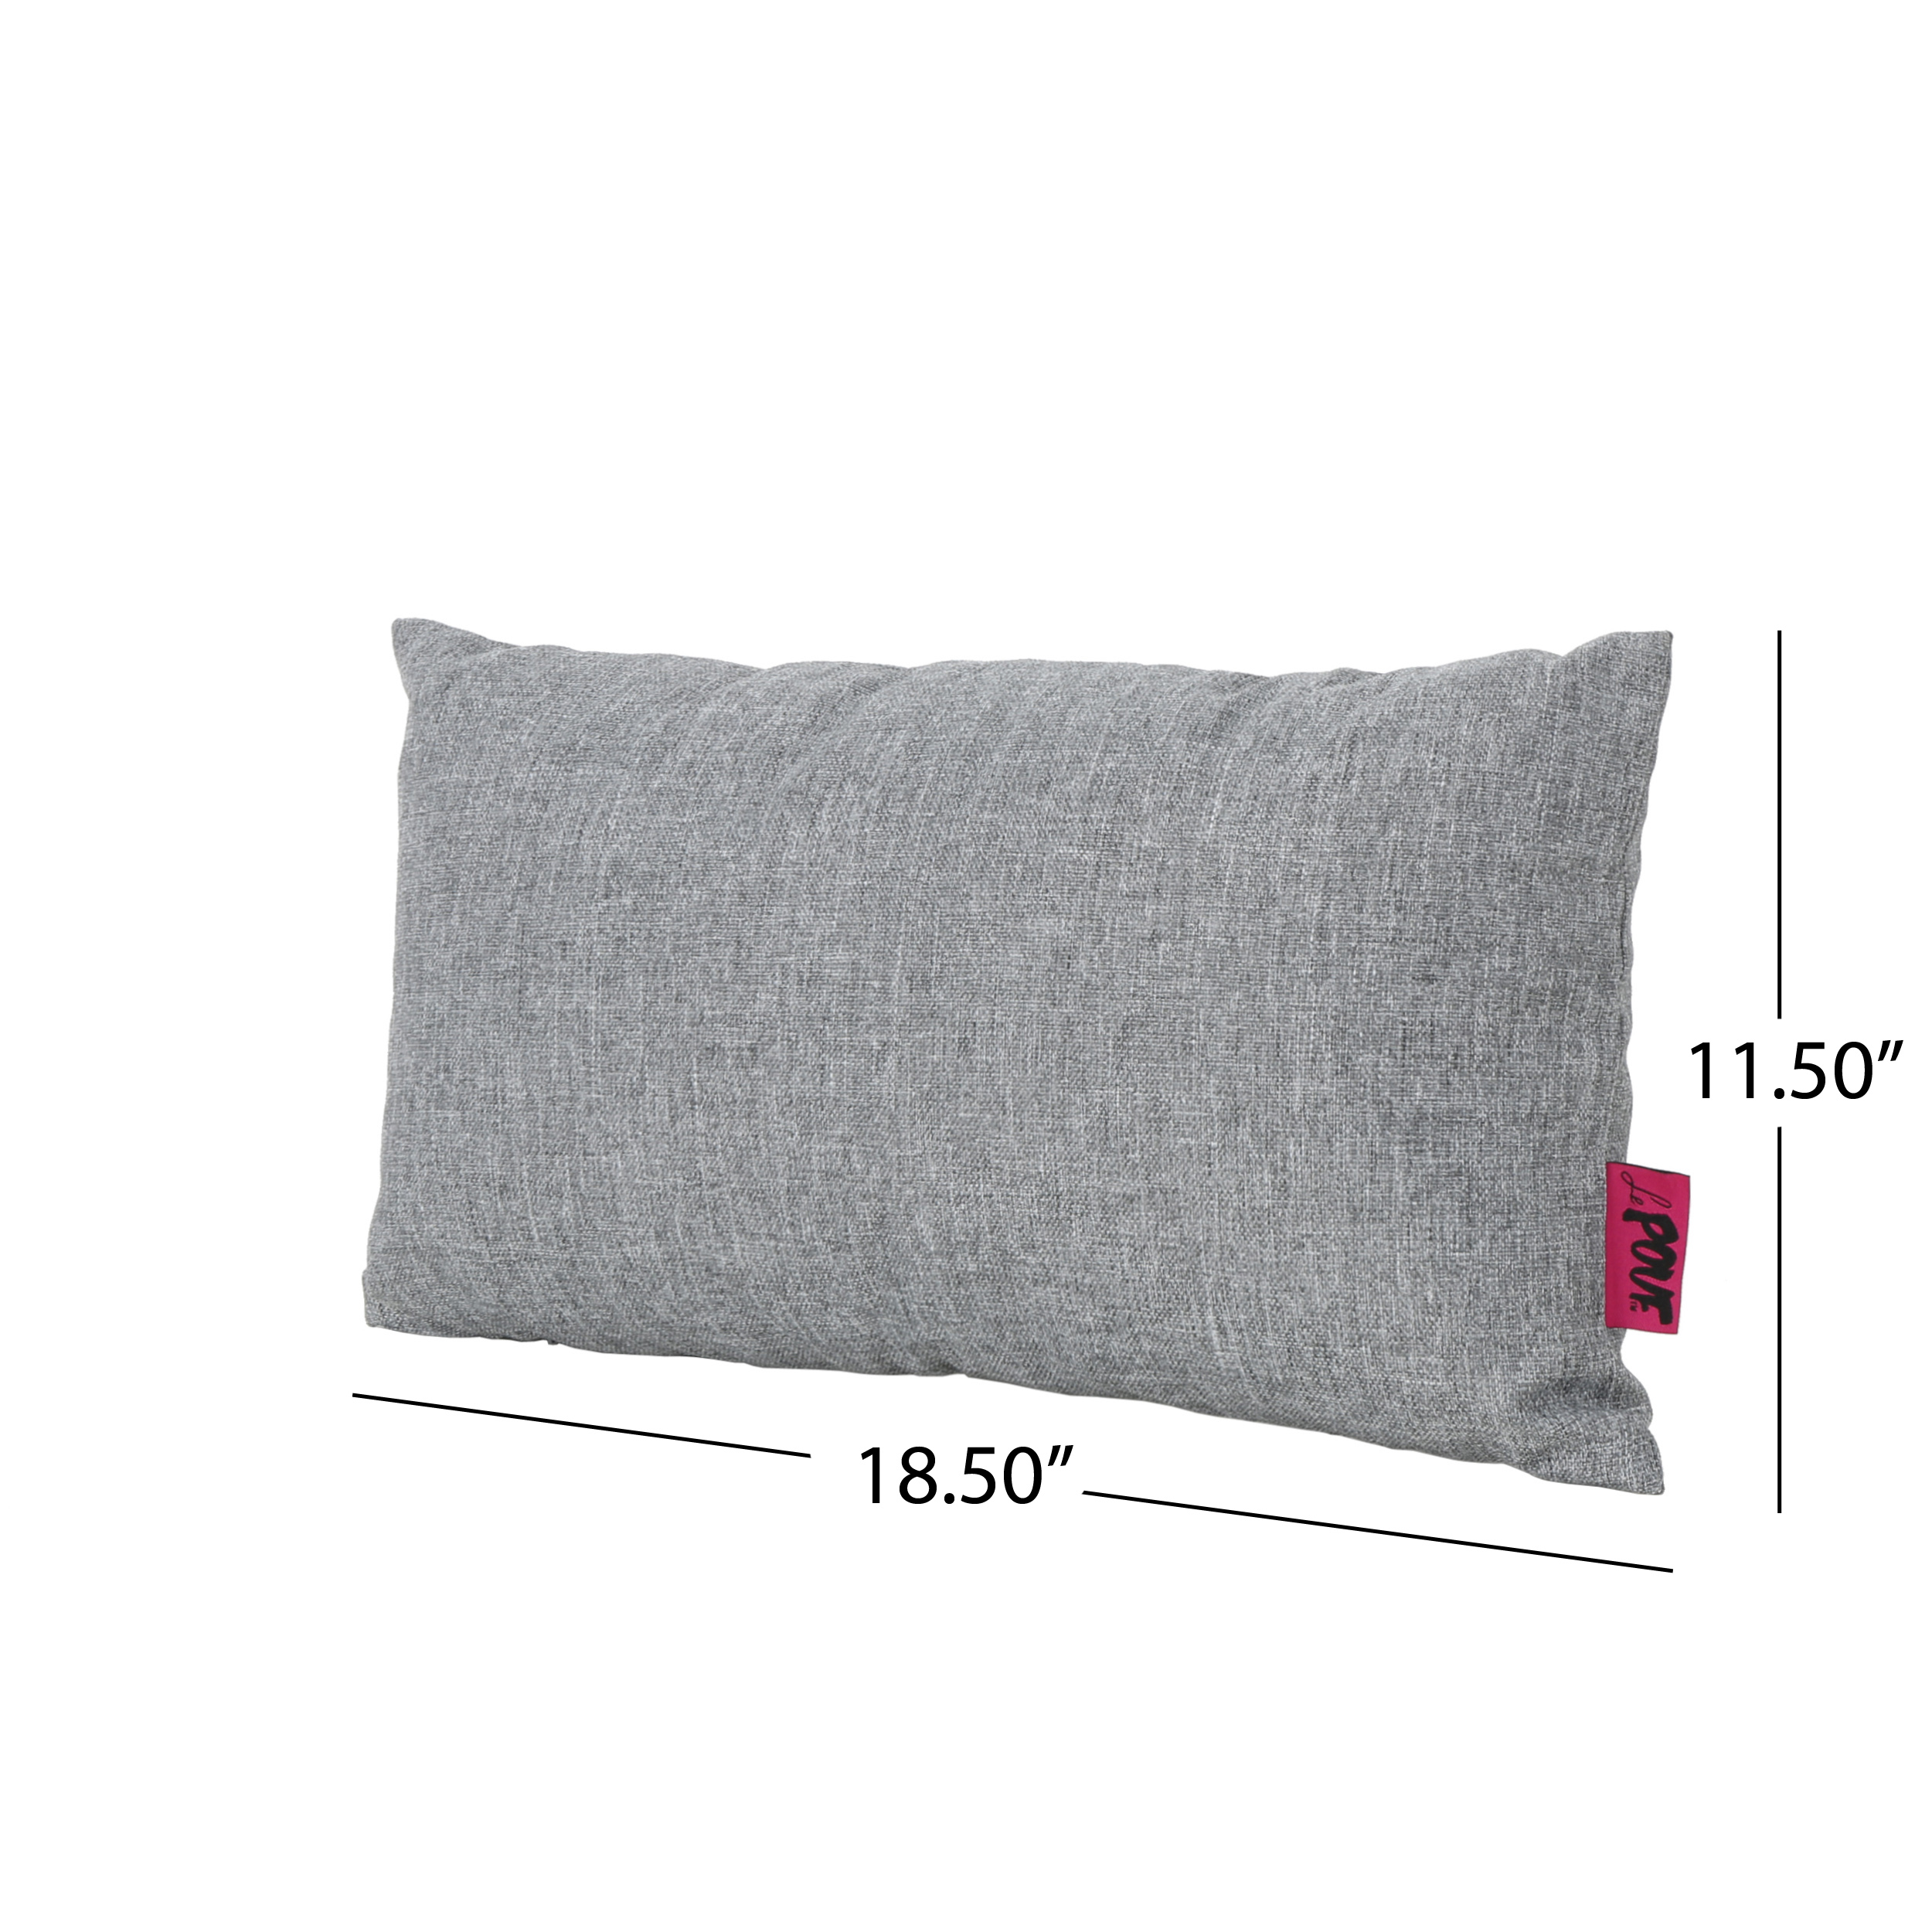 Noble House Coronado 18.5x11.5" Outdoor Fabric Throw Pillow in Gray - image 3 of 11